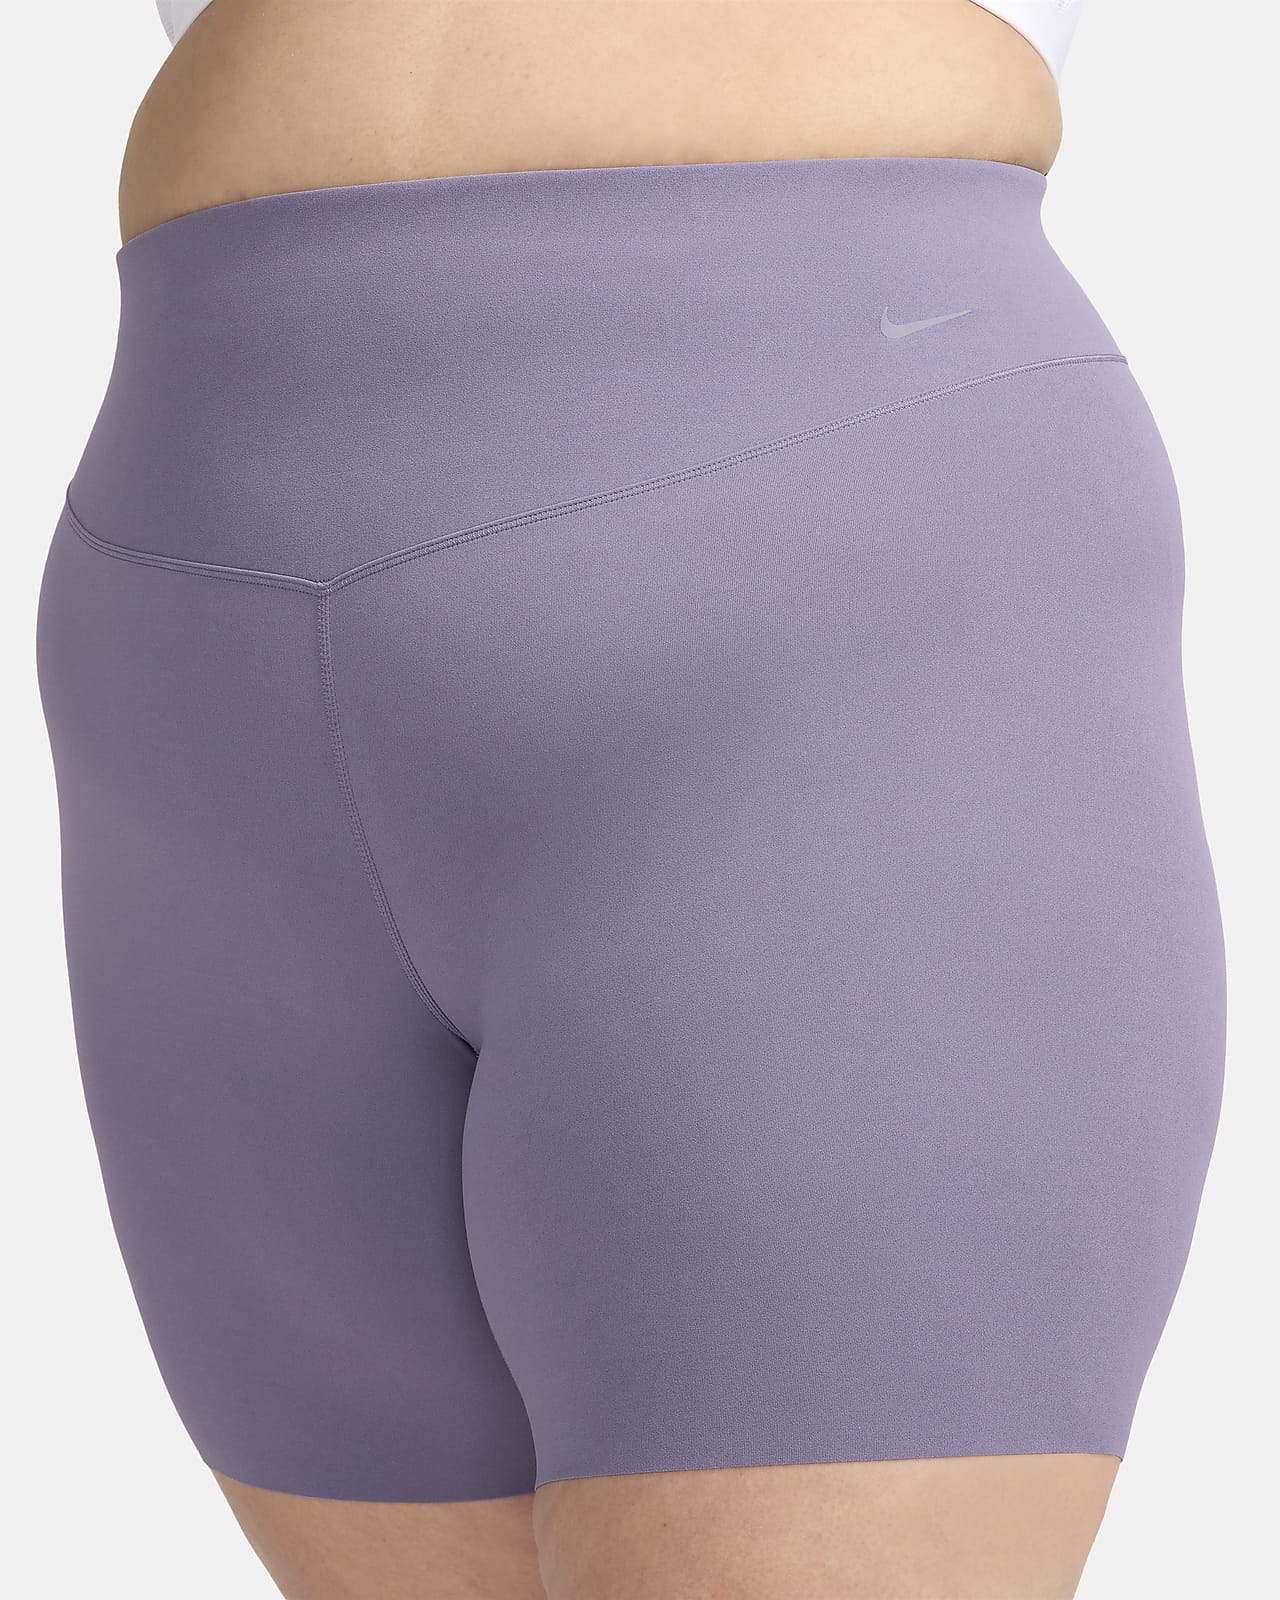 Sunzel Light Blue 8” Biker Shorts Women’s Size Small NEW